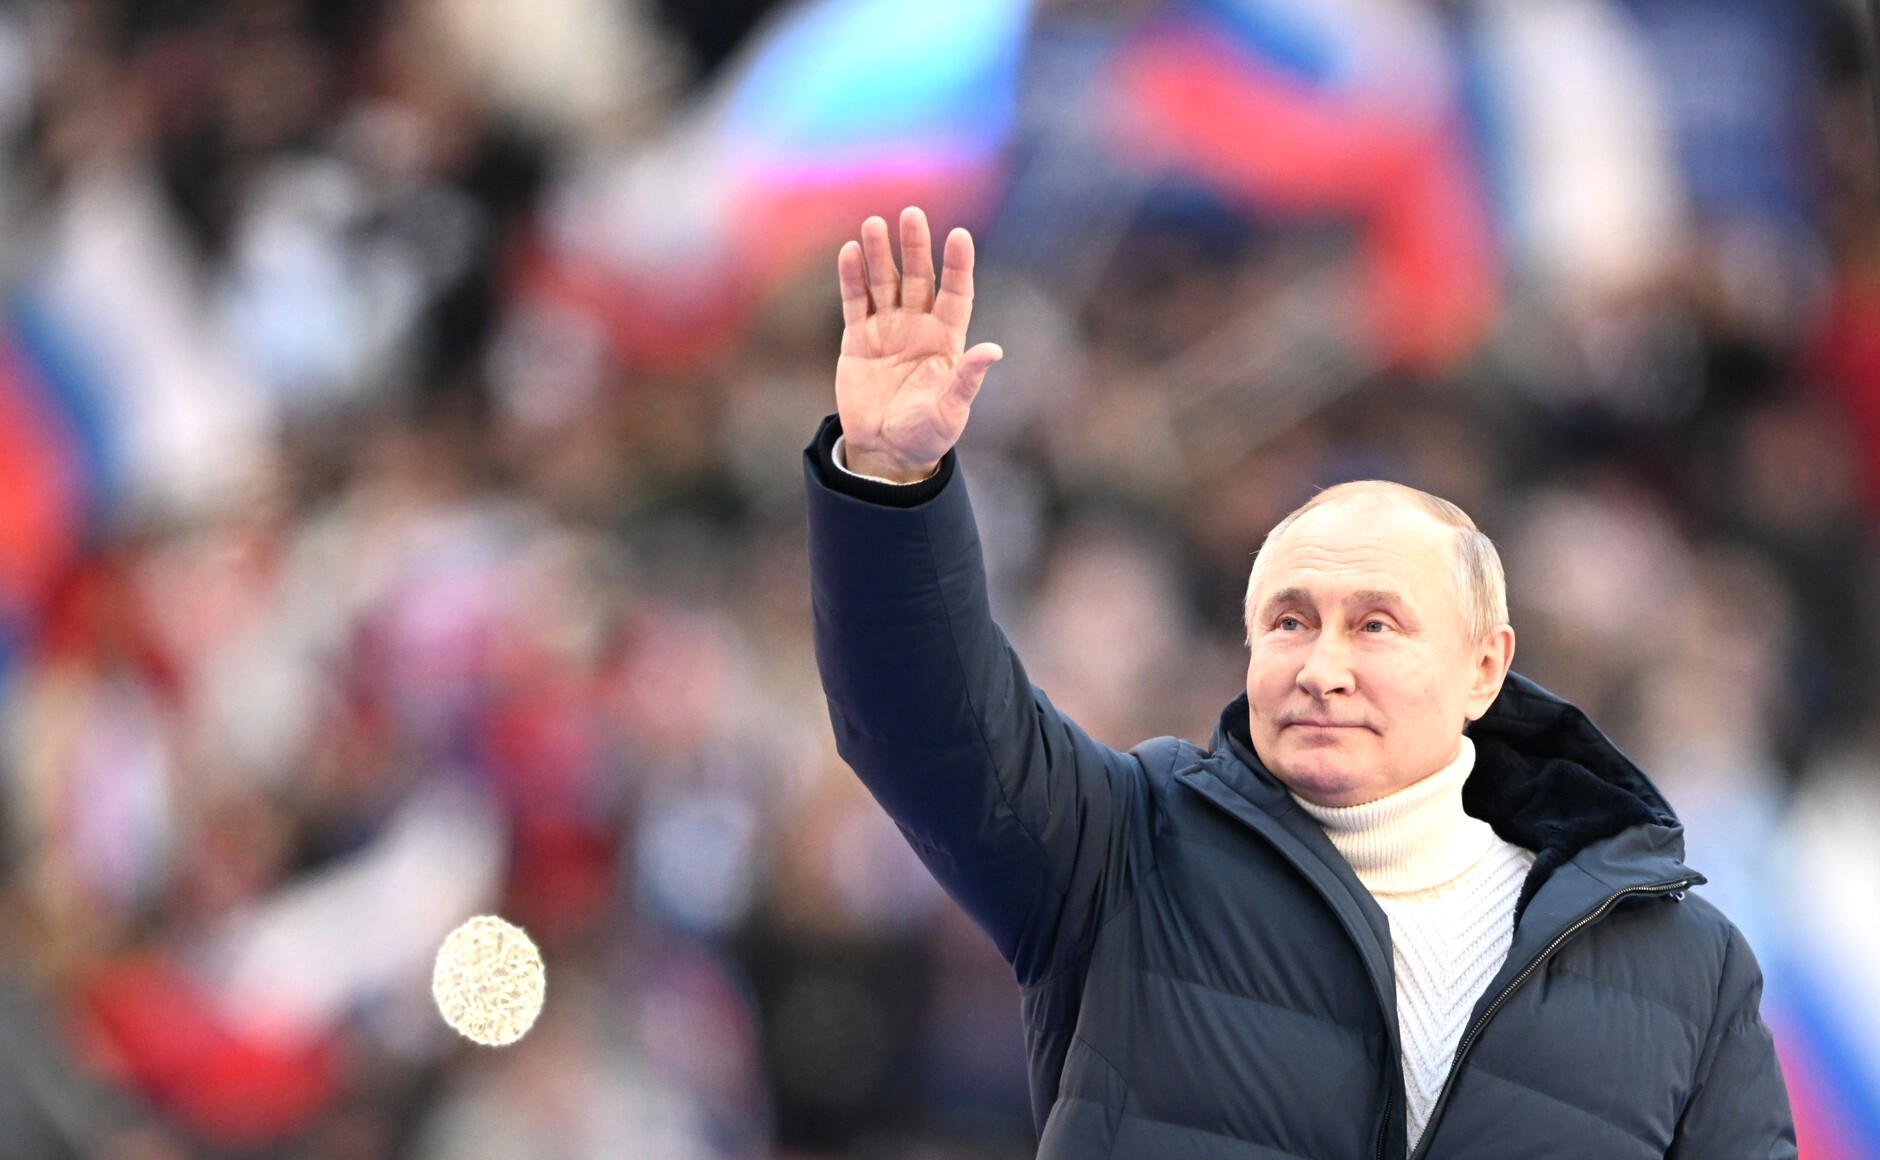 ¿Qué consecuencias tendrá la propaganda en las elecciones rusas?